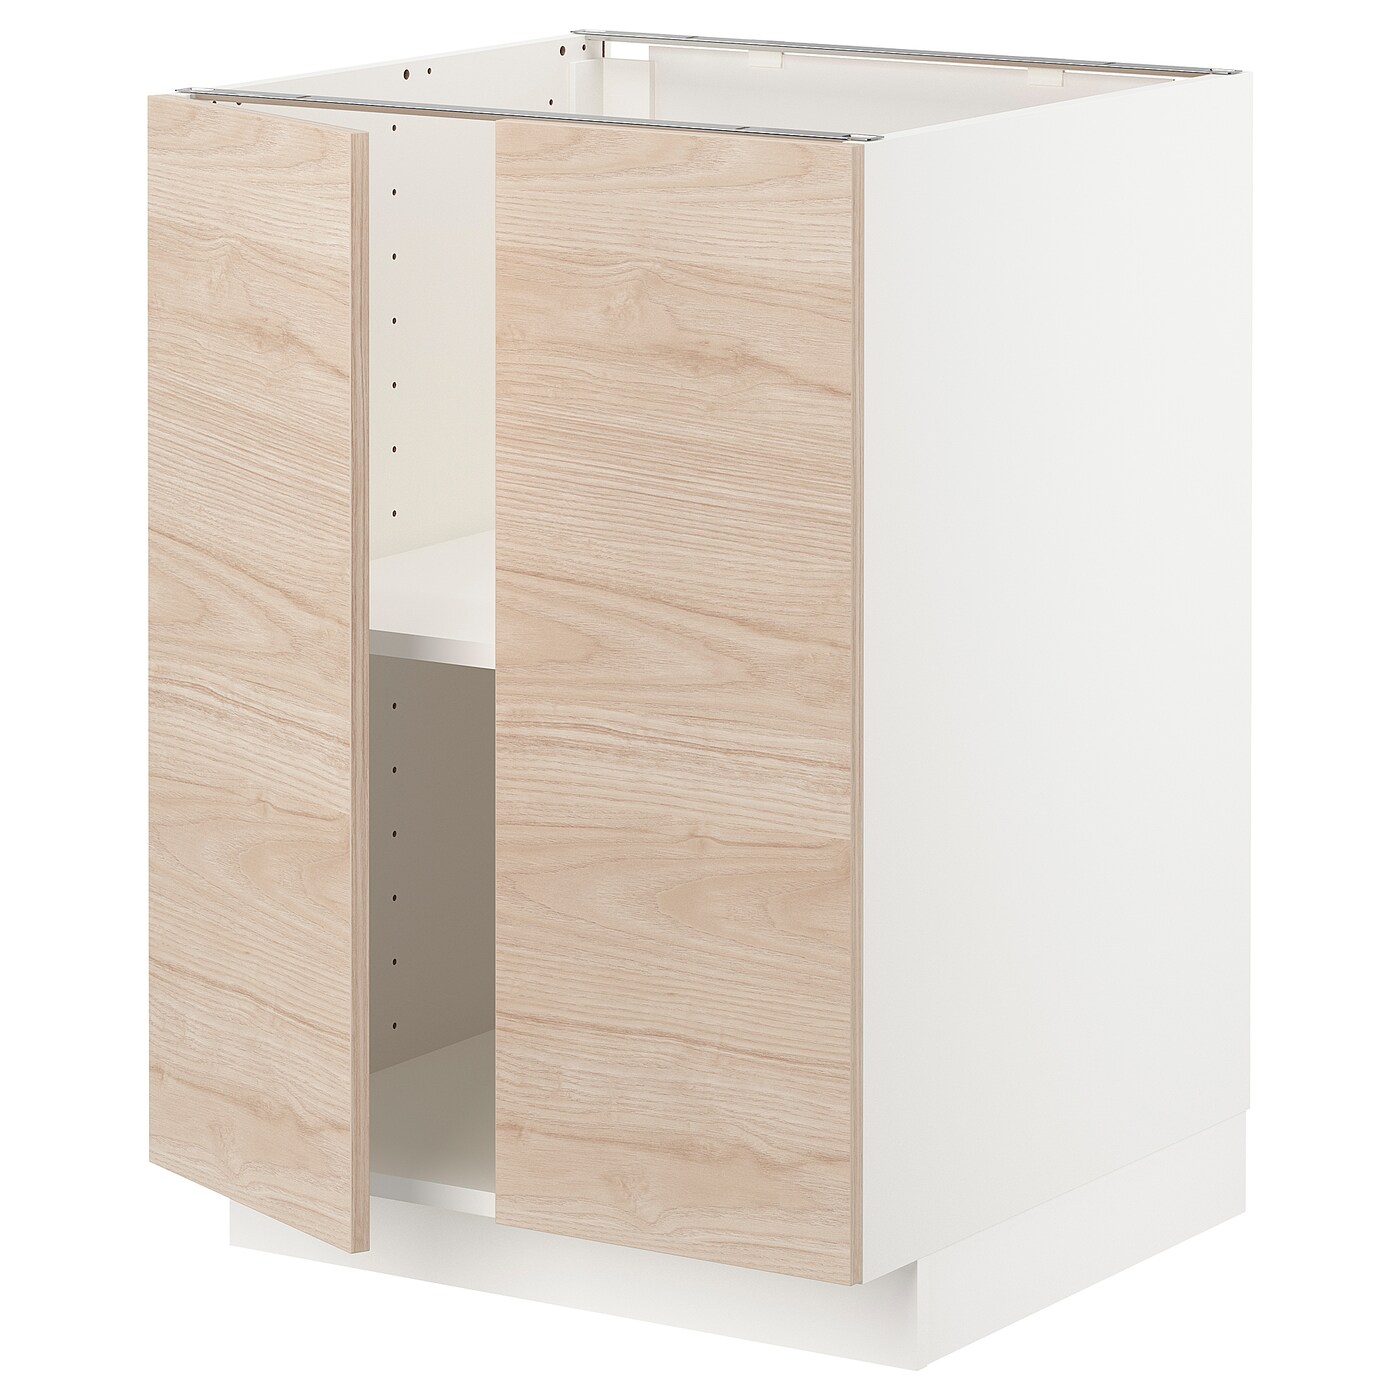 Напольный шкаф - IKEA METOD, 88x62x60см, белый/бежевый, МЕТОД ИКЕА